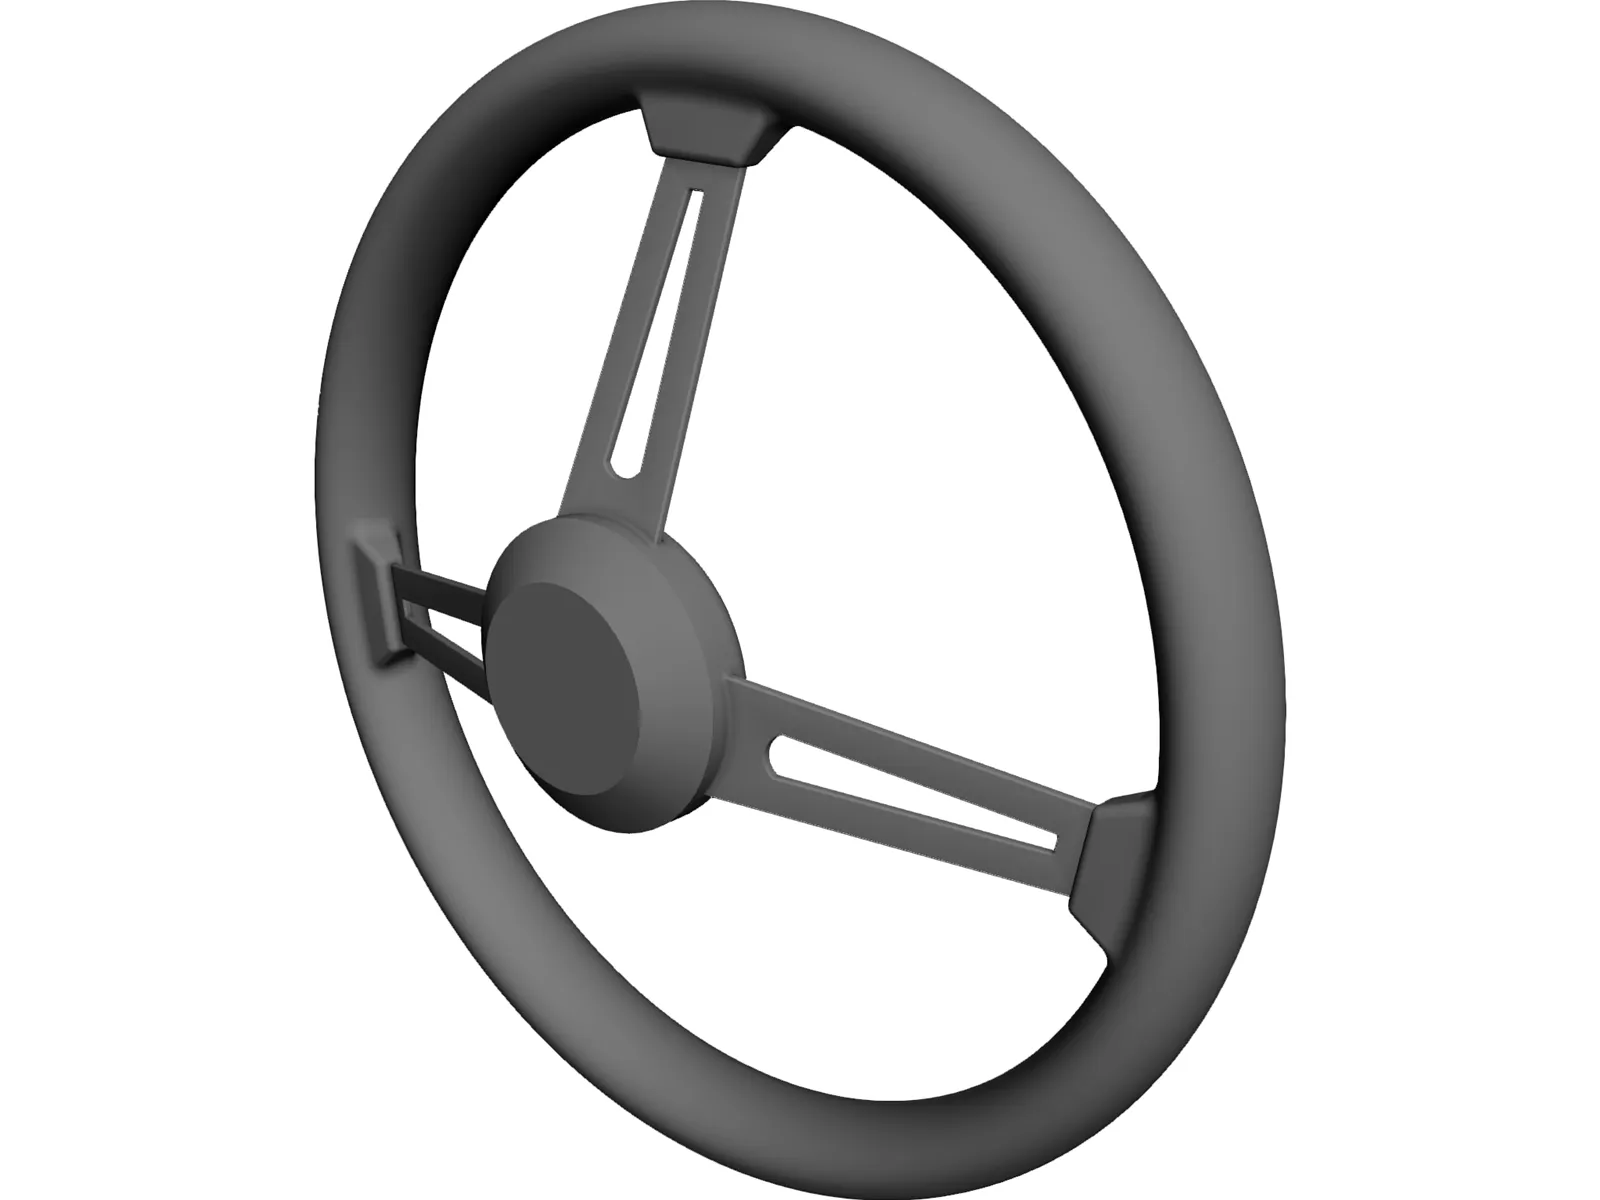 MOMO Steering Wheel 3D Model